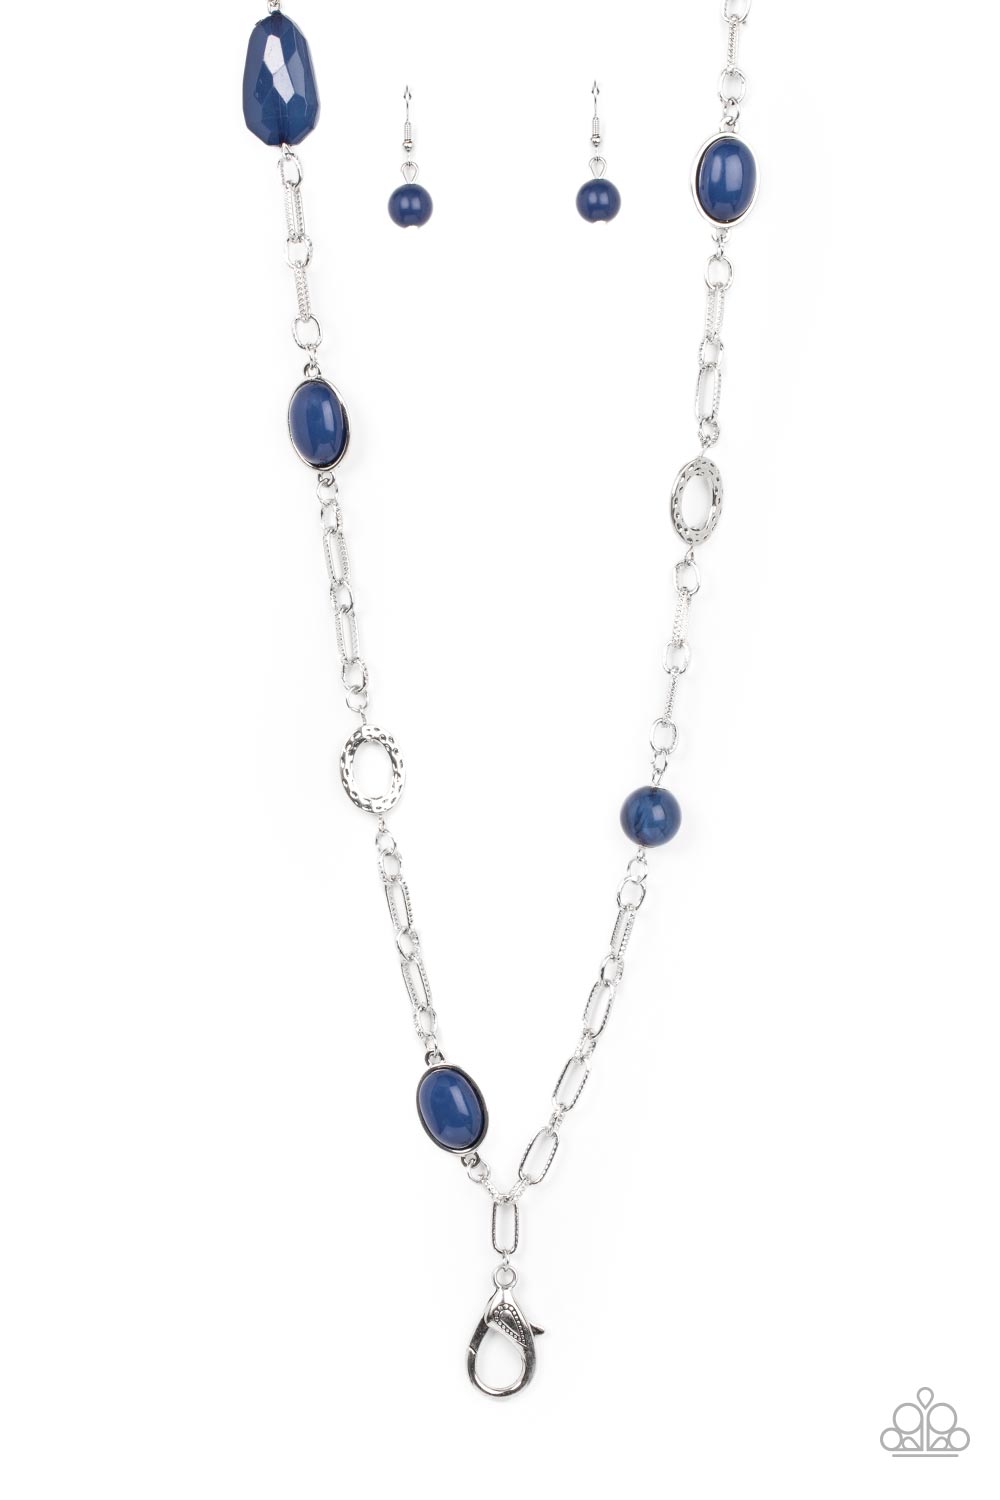 Barcelona Bash - blue - Paparazzi LANYARD necklace